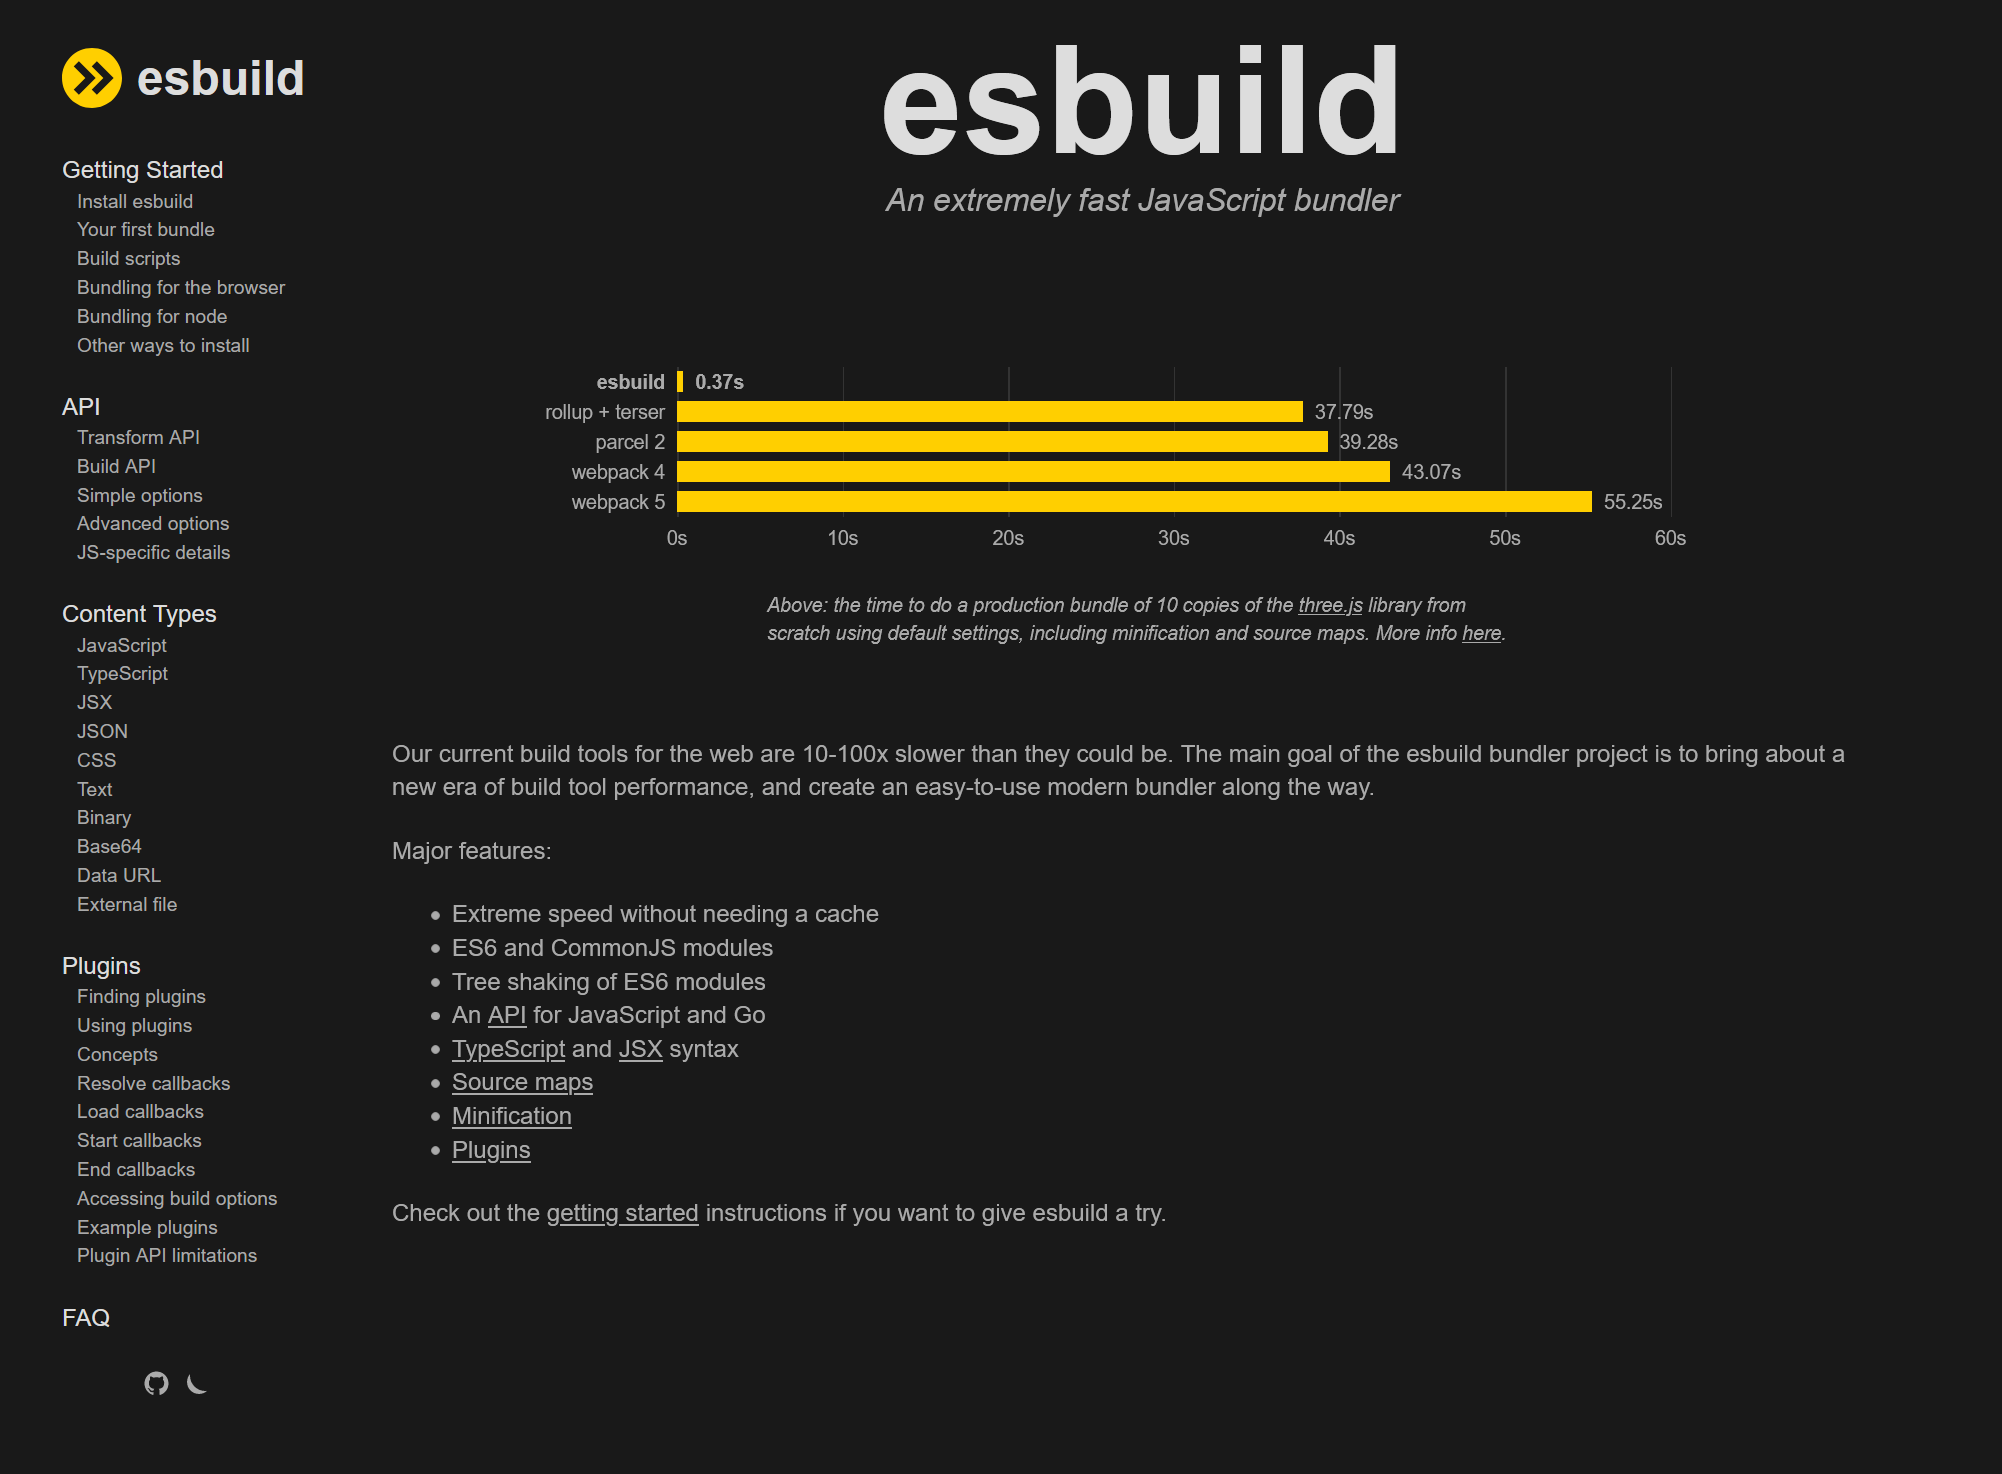 A screenshot of the esbuild website.